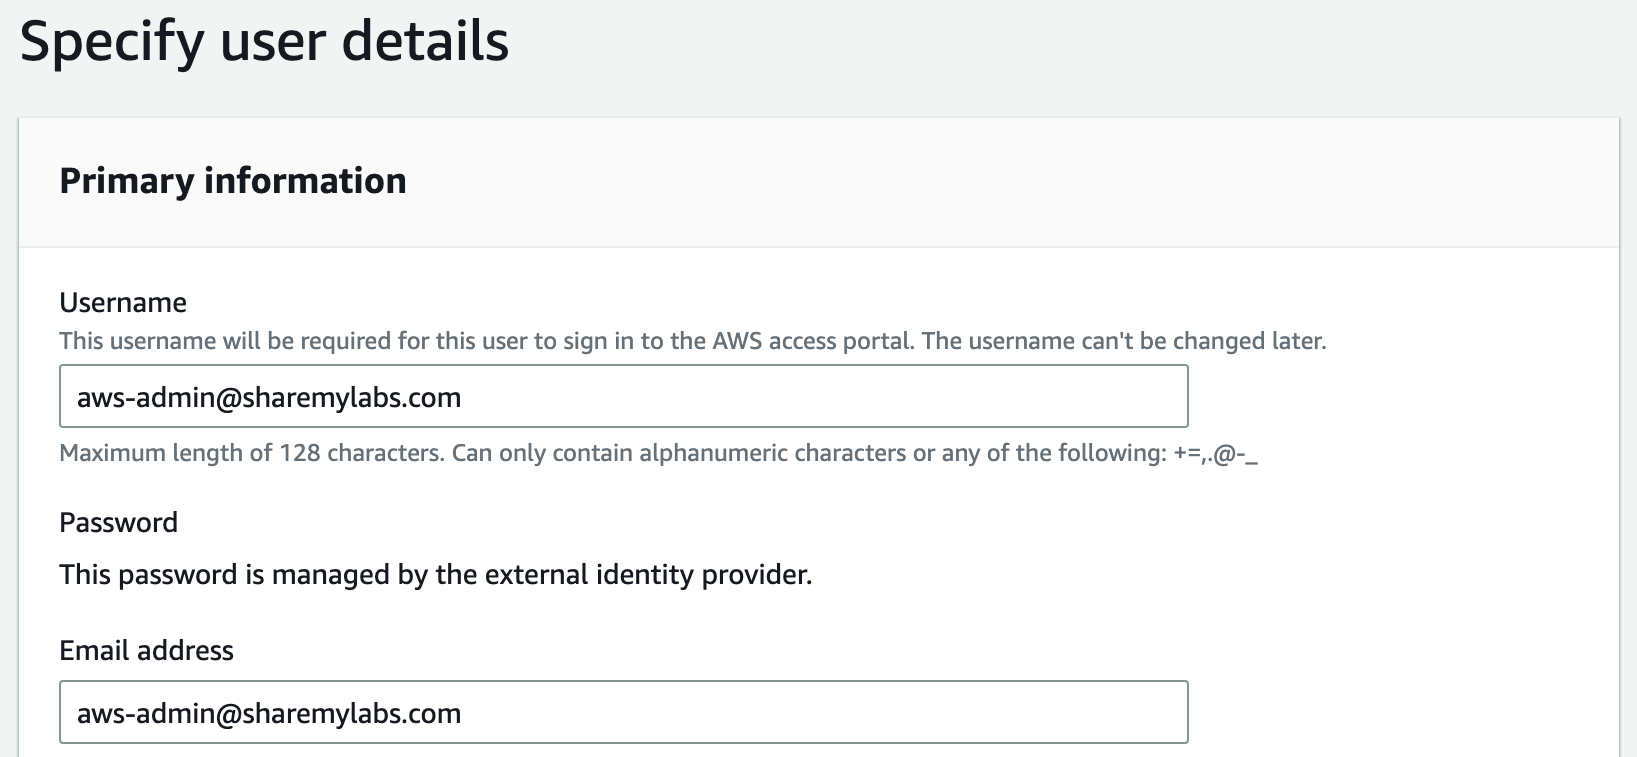 AWS - Integrating PIM with Azure AD SSO for AWS IAM Identity Center